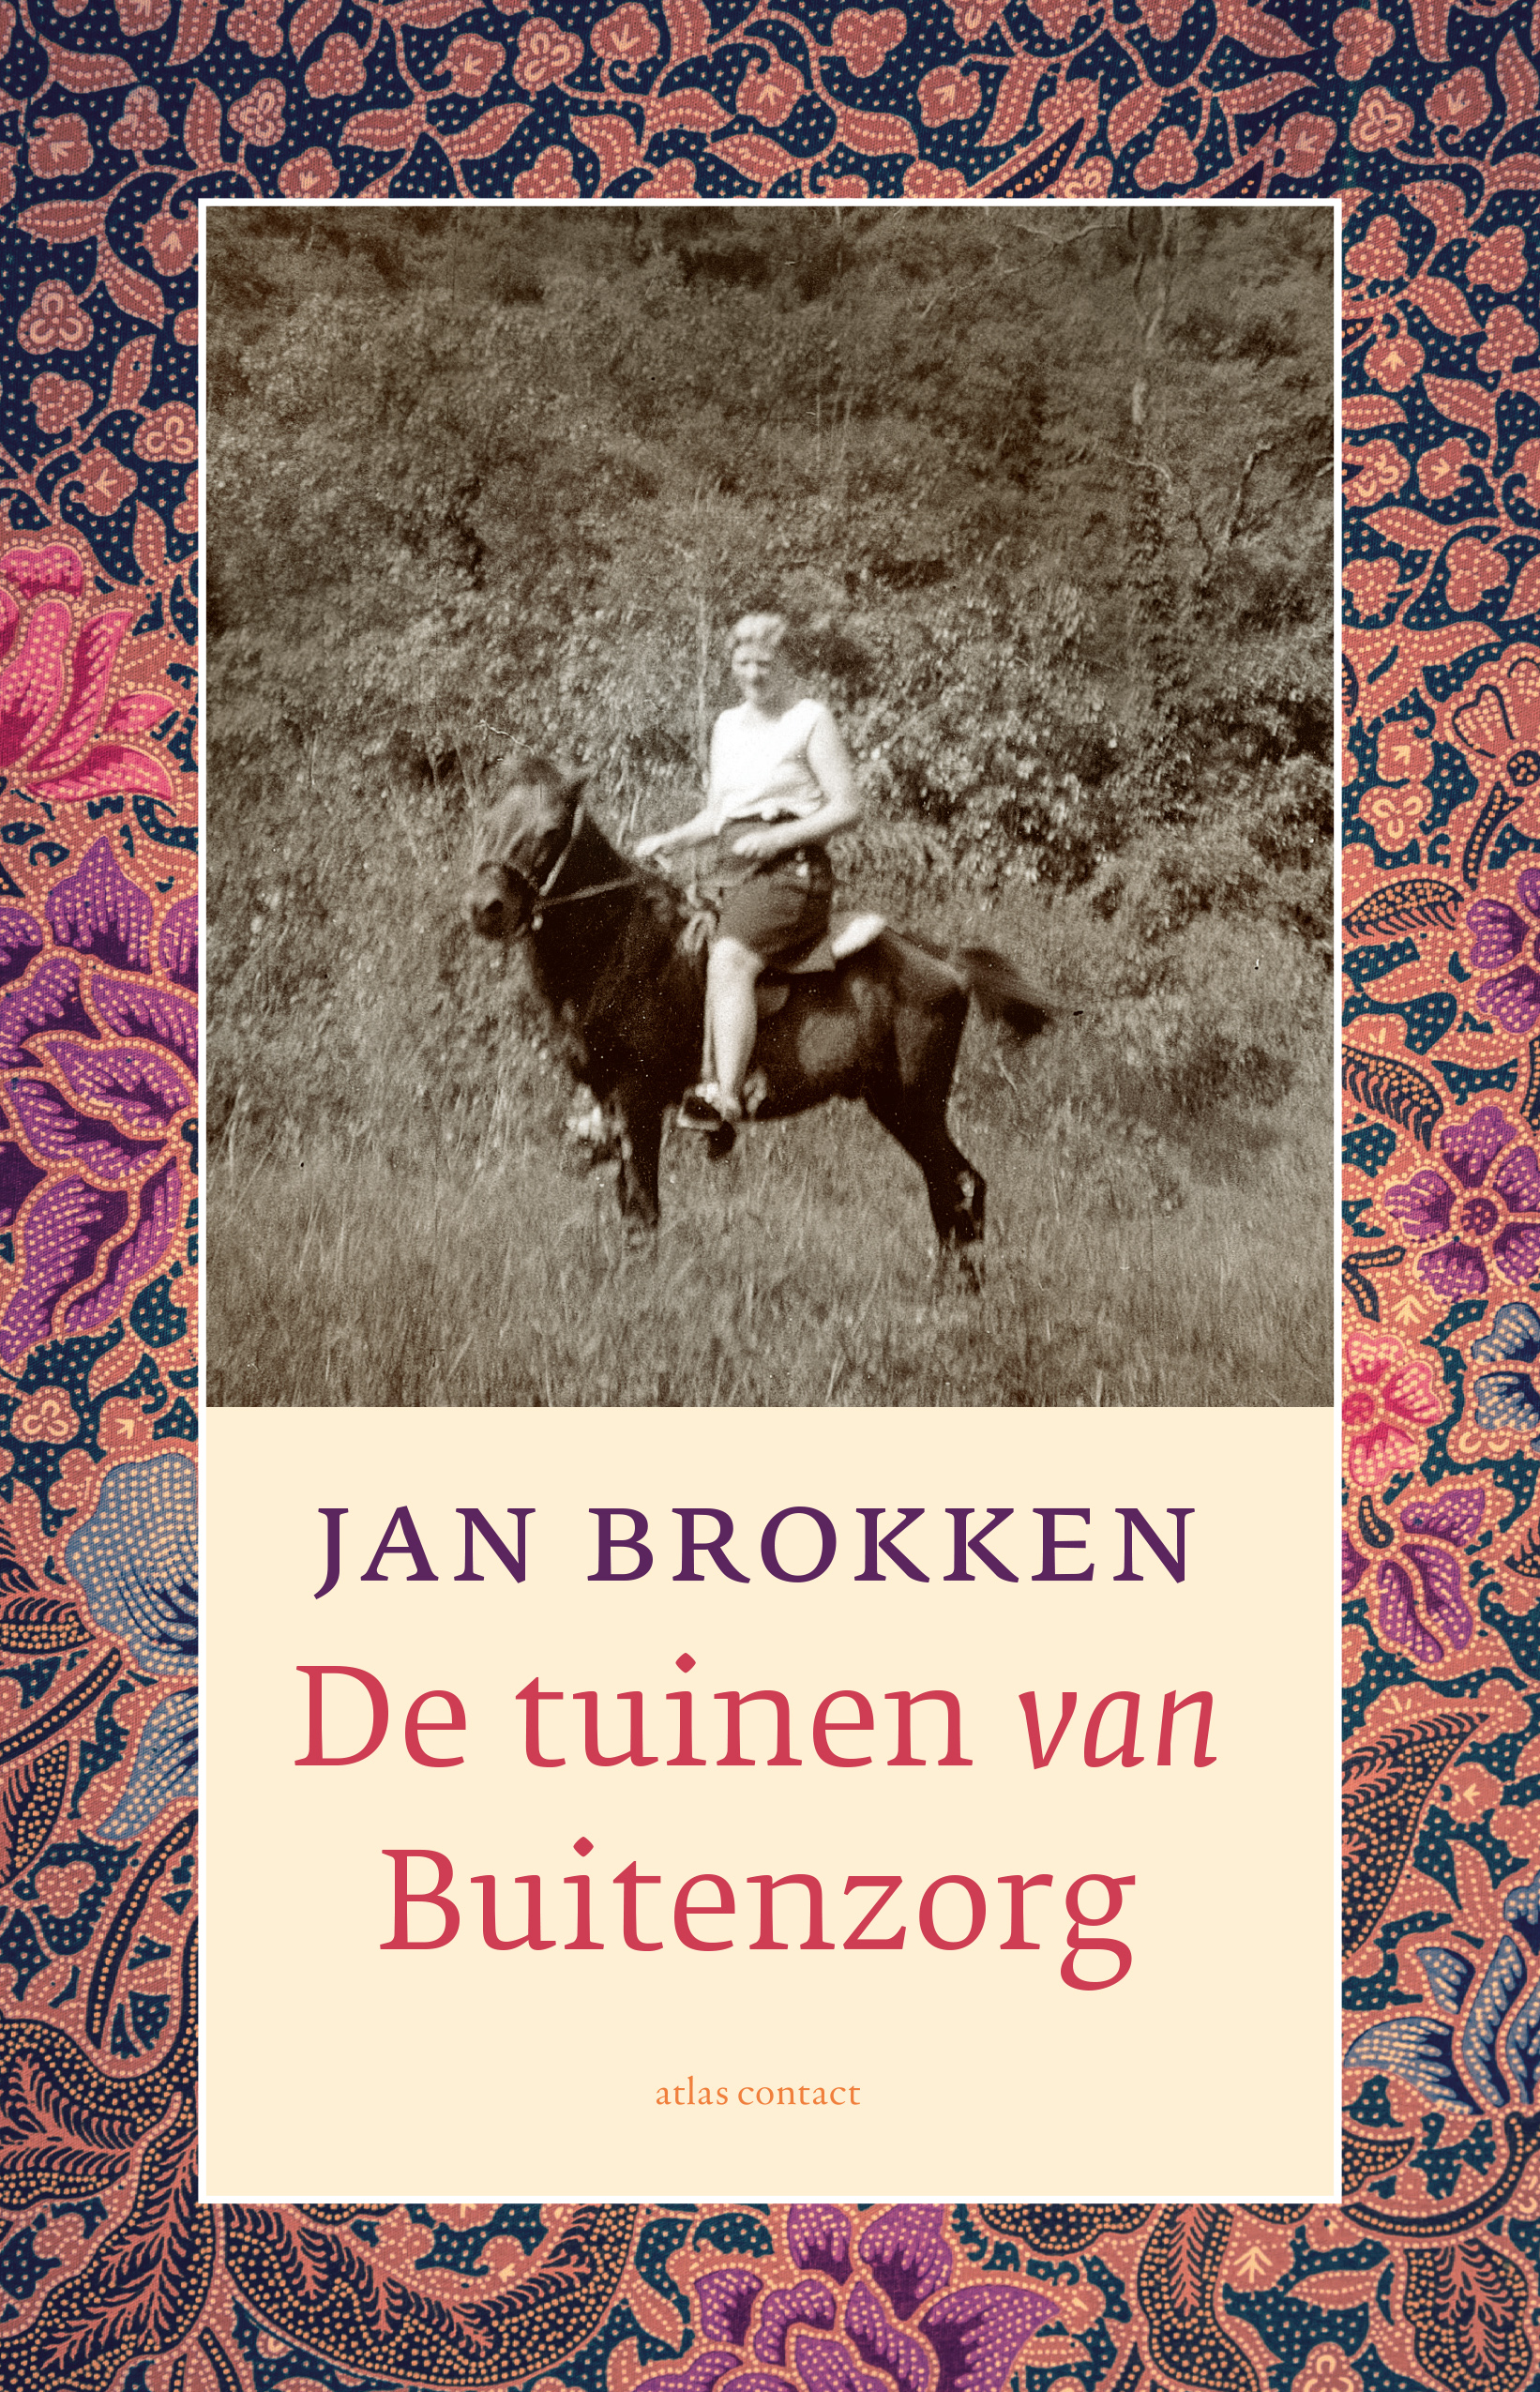 Tzum Nieuws: Jan Brokken knalt met nieuw boek meteen de bestsellerlijst in, hoogste binnenkomer deze week: nummer zeven